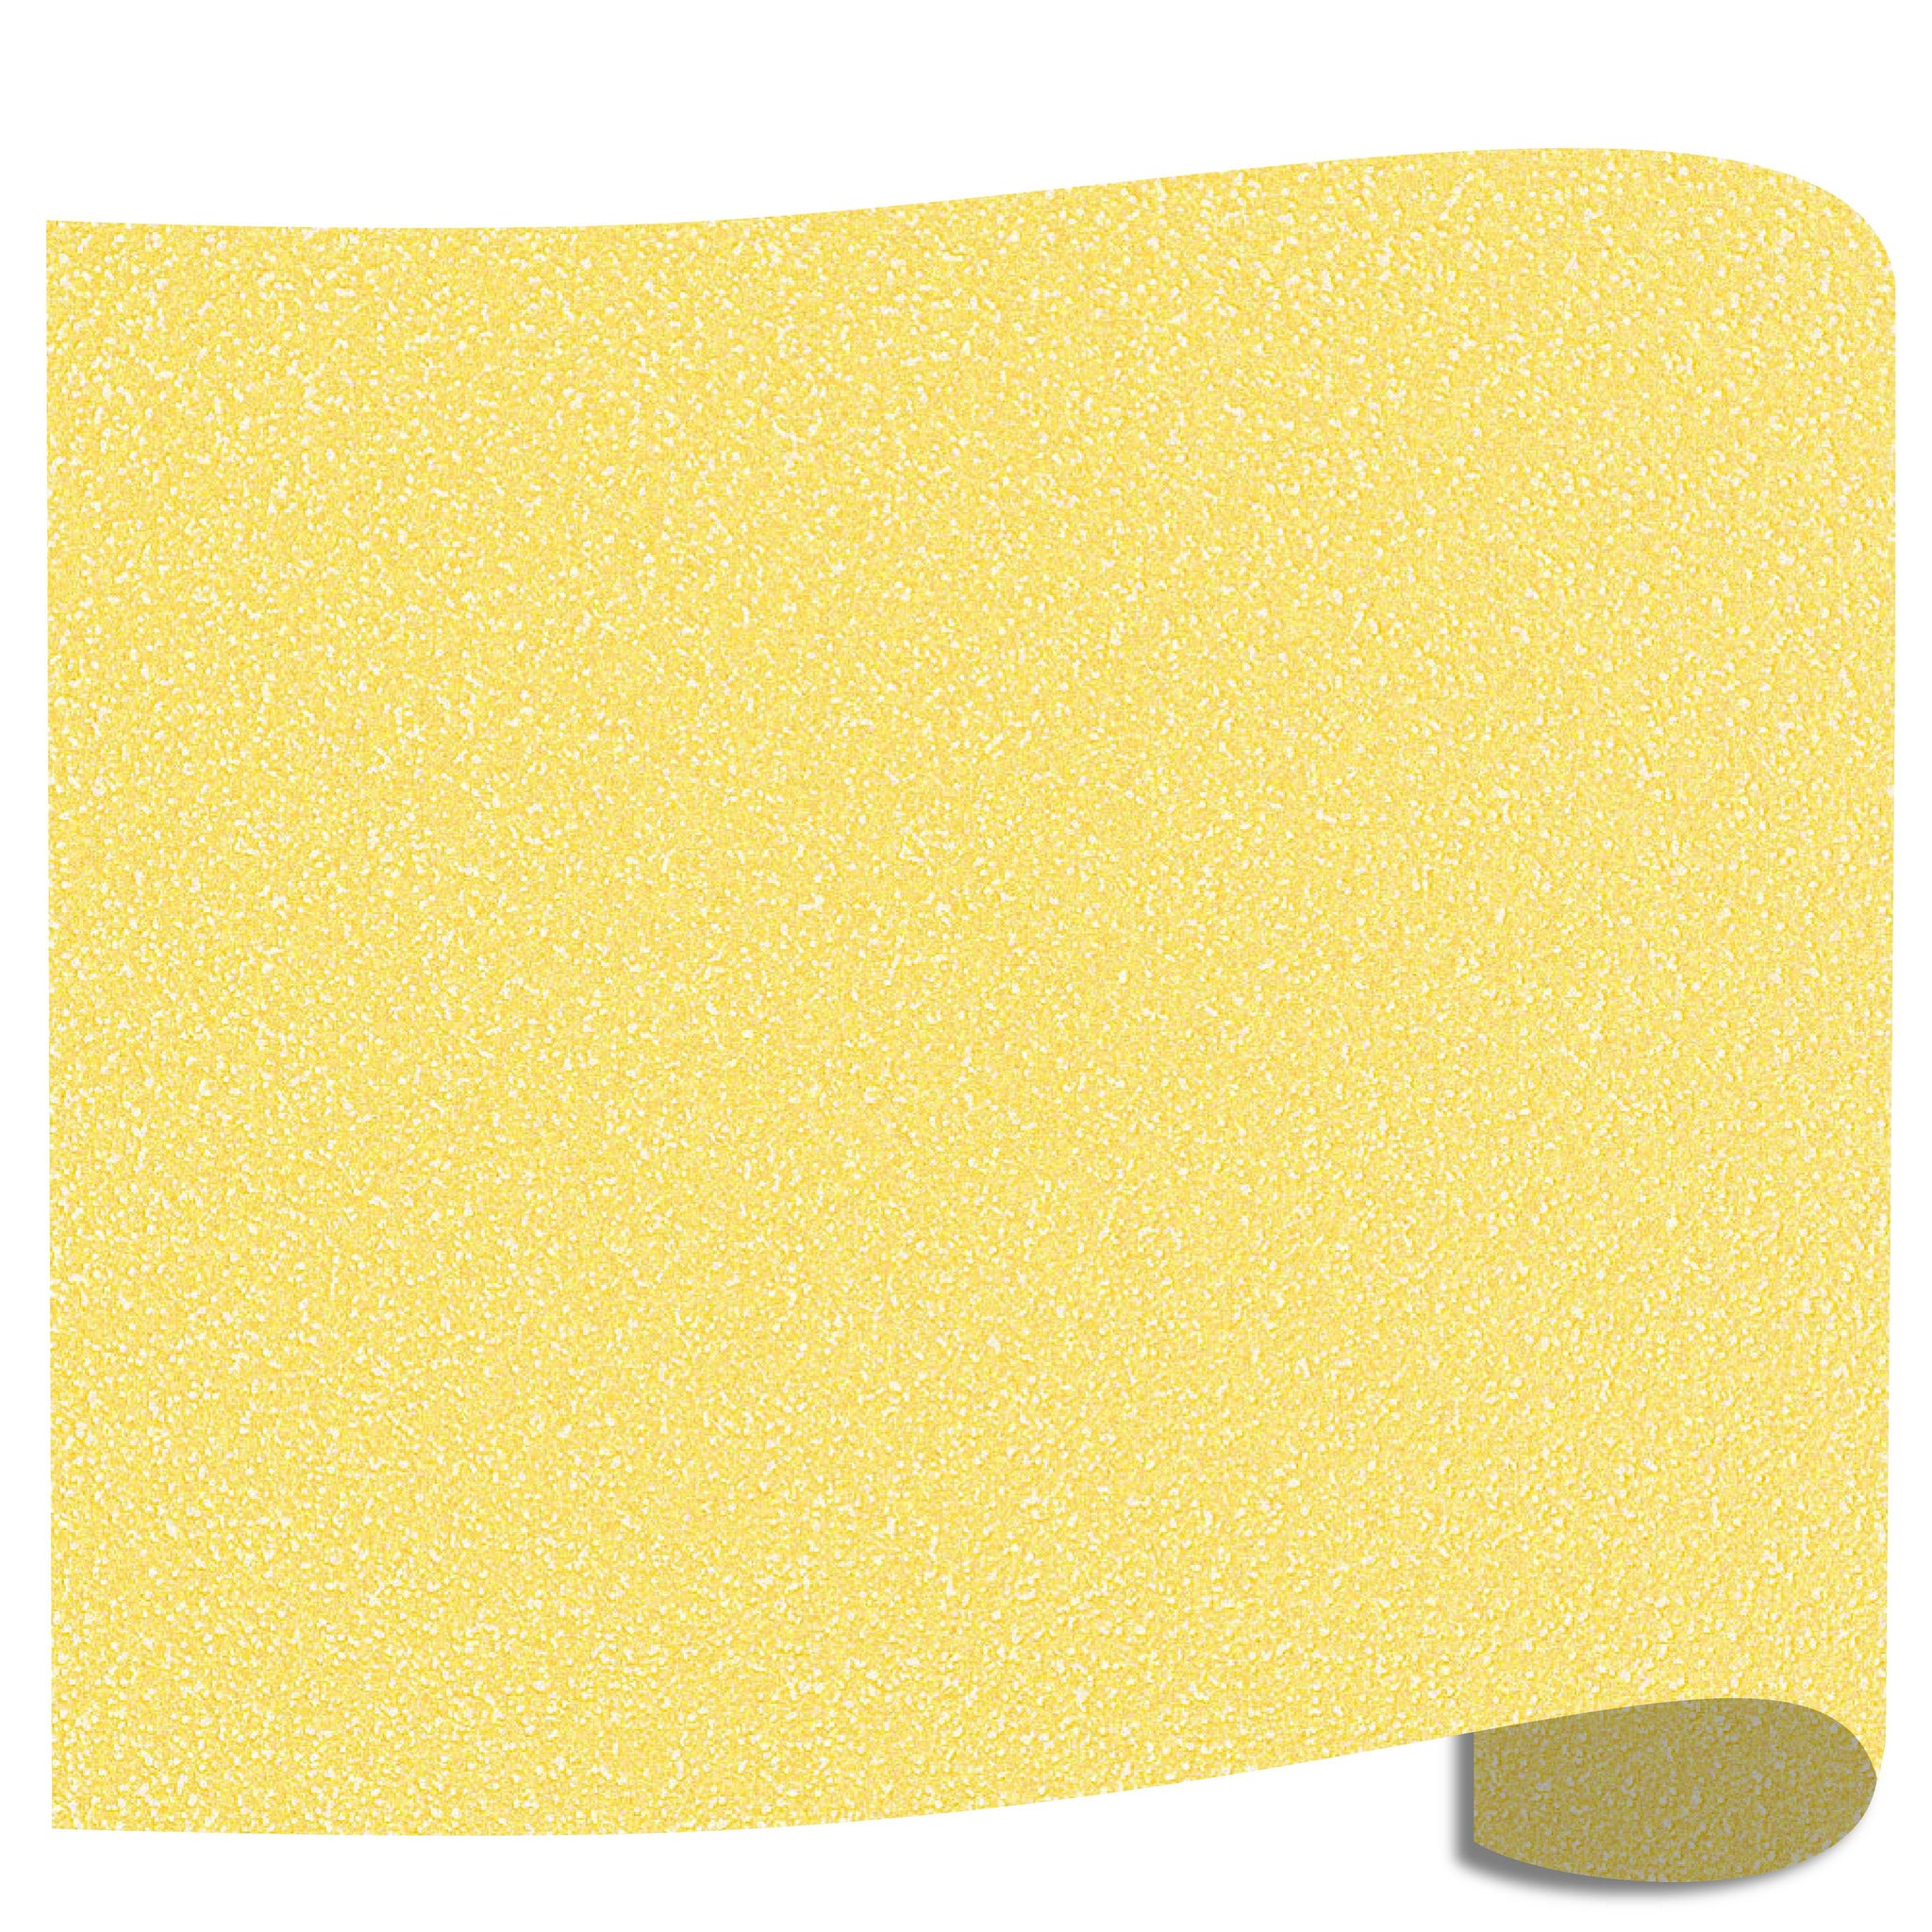 Siser Glitter - Lemon Sugar - 20 x 12 sheet